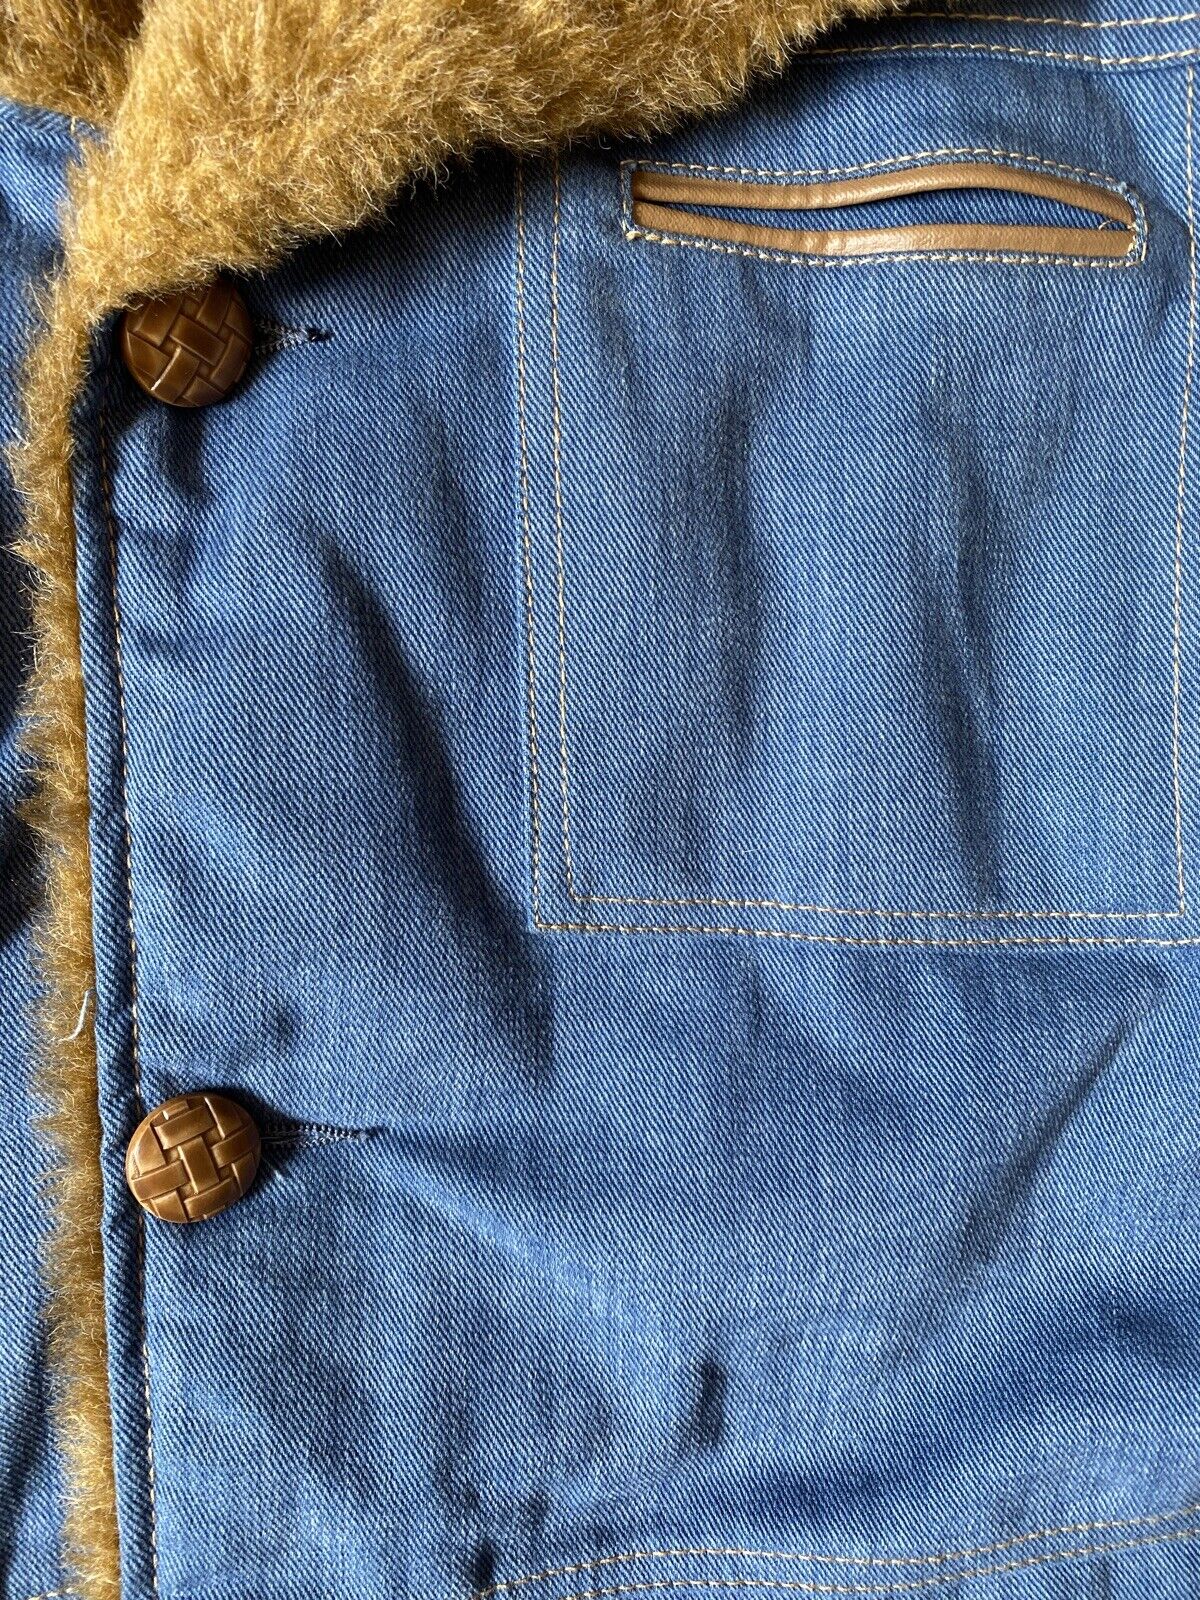 Vintage Shipton Sportswear Jacket Sherpa Like Lined Made In U.S.A. Era Size  40